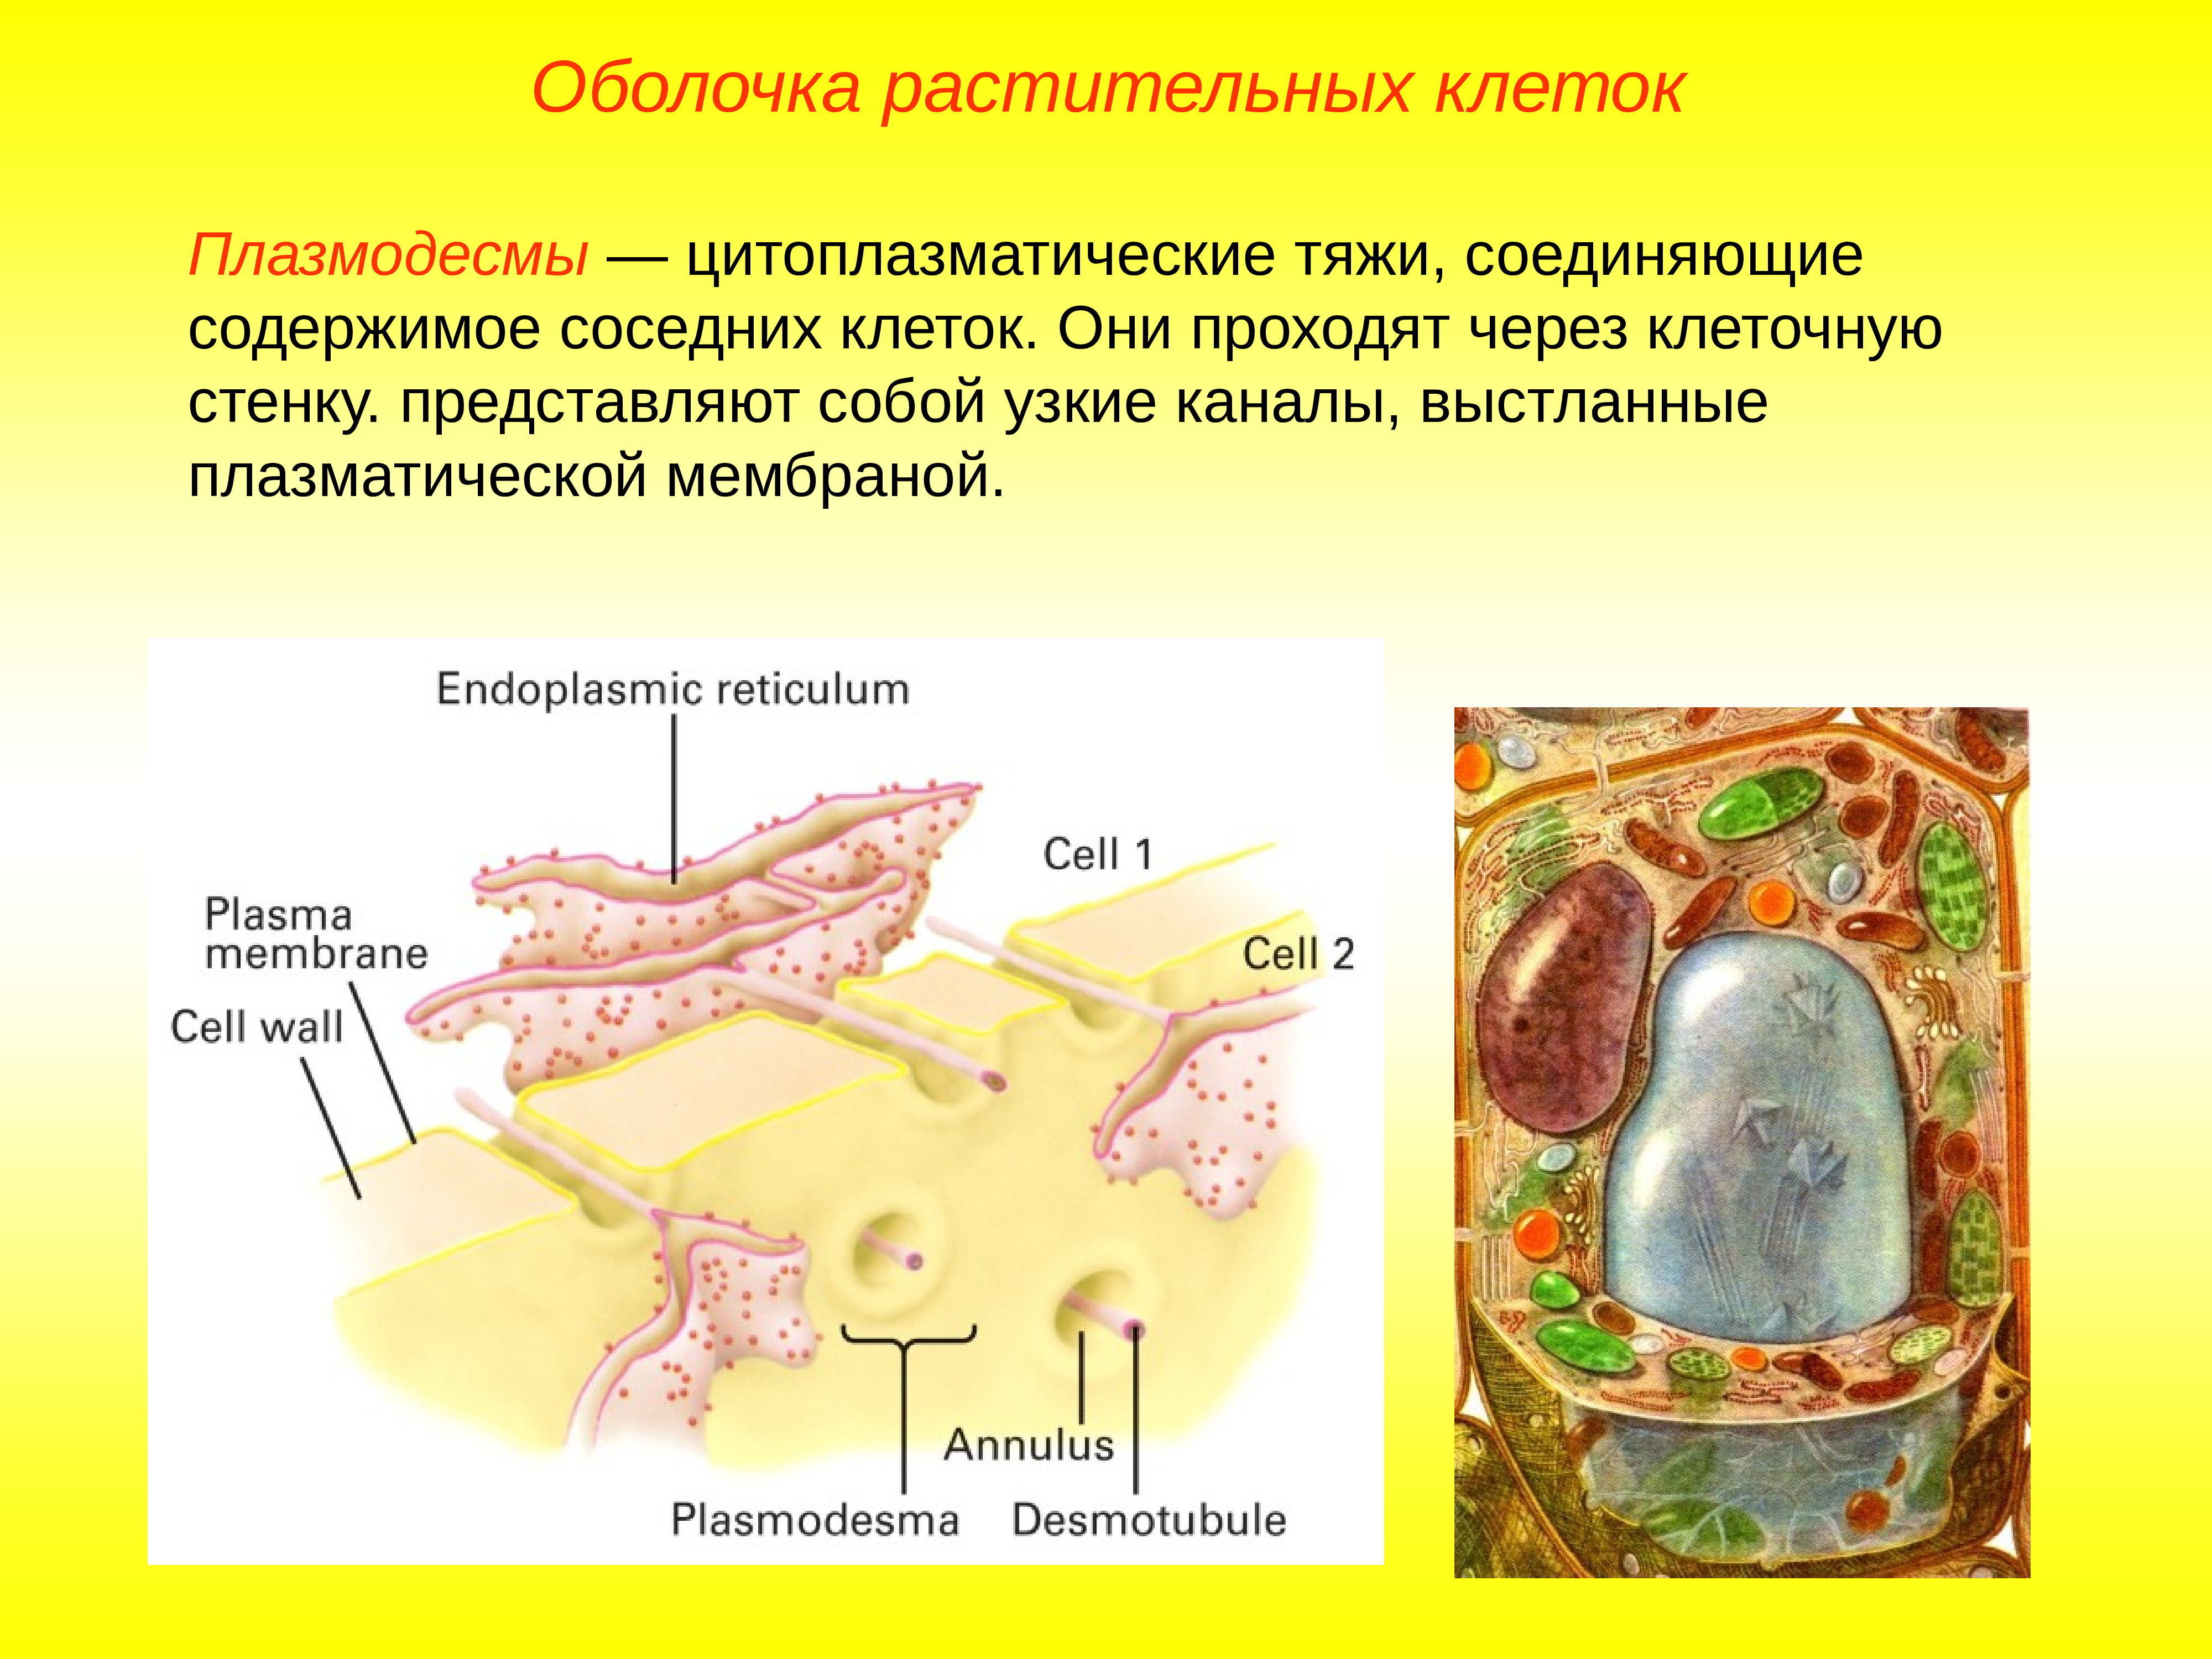 Стенка растительной клетки содержит. Клеточная оболочка растительной клетки. Растительная клеточная мембрана строение. Плазматическая мембрана растительной клетки содержит. Клеточная мембрана растительной клетки строение и функции.